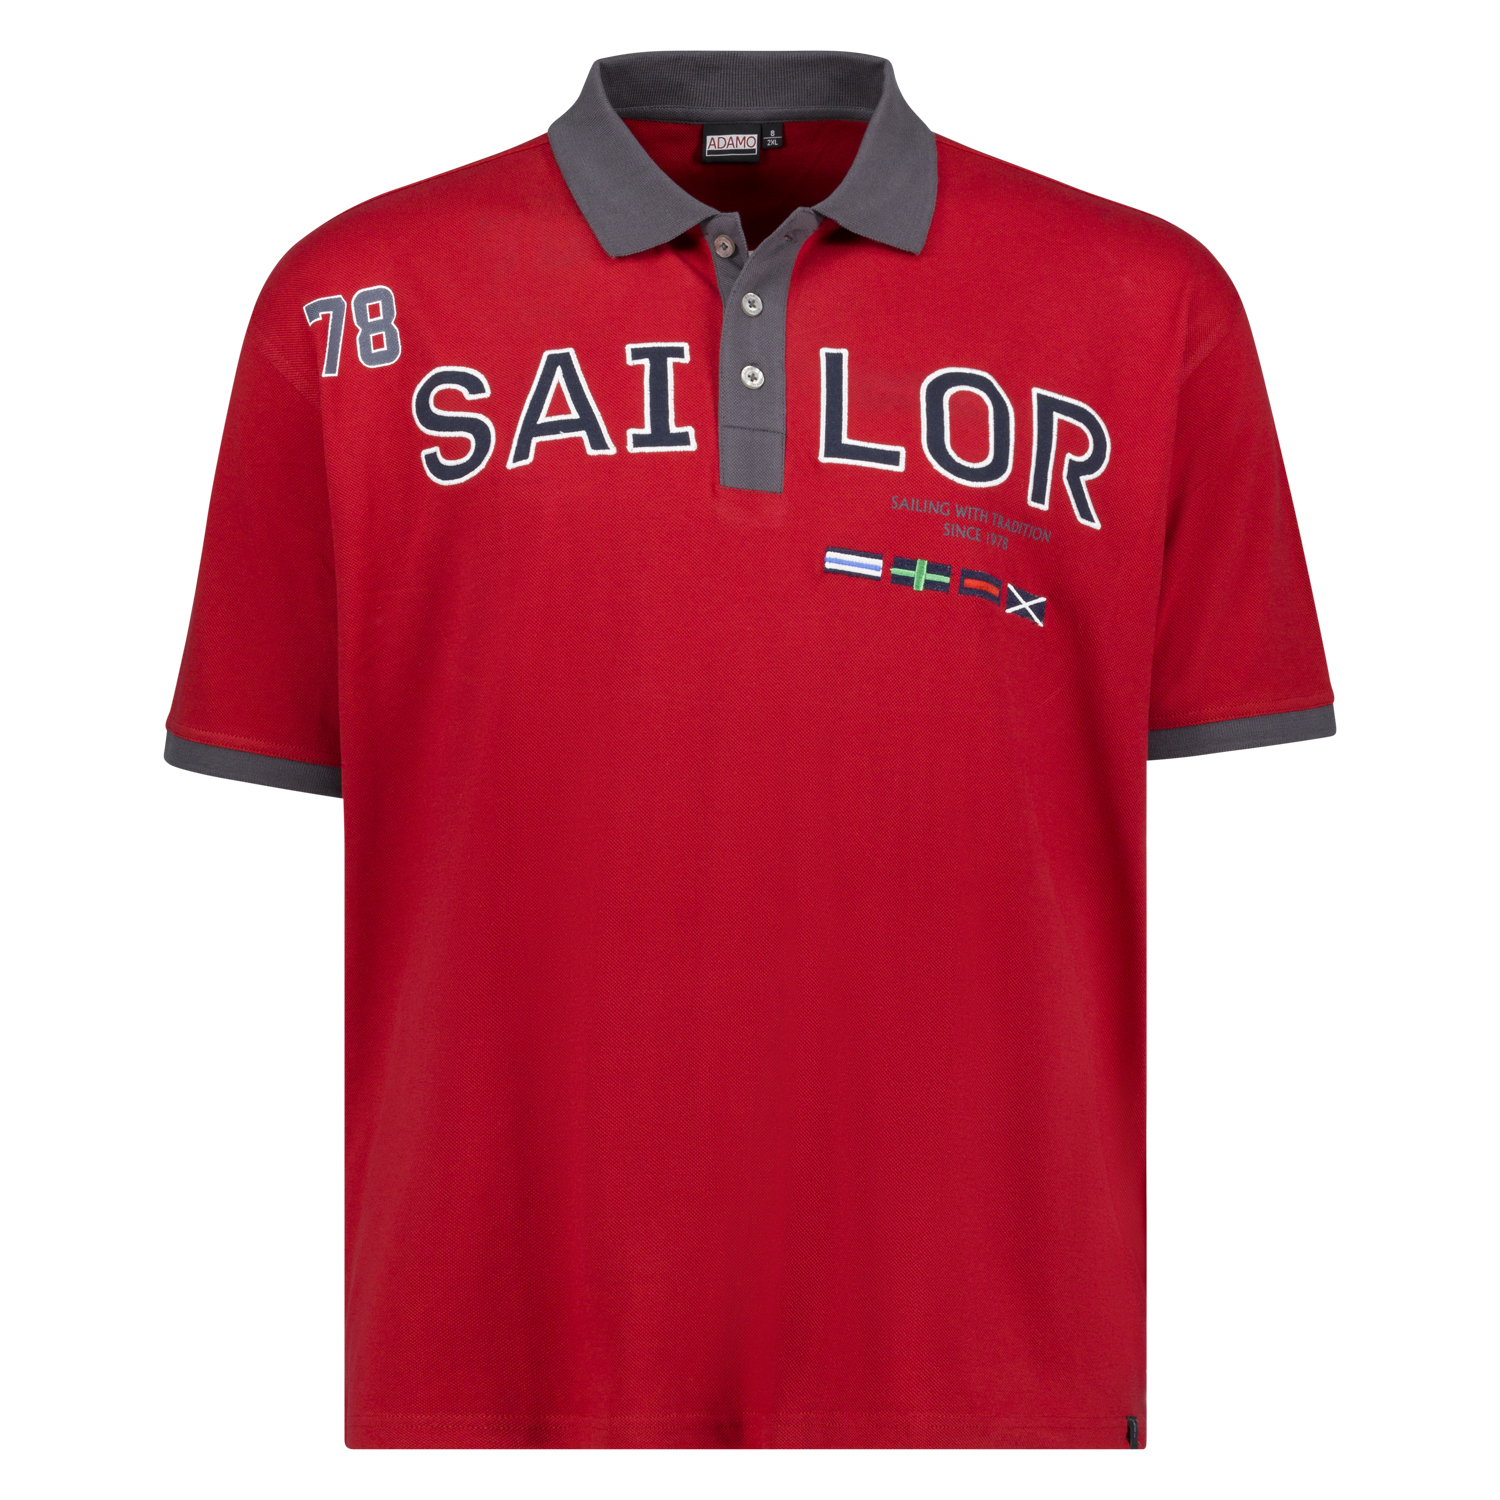 Pique Polohemd kurzärmlig mit Print und Stickerei Herren von ADAMO Serie SAILOR in rot bis Übergröße 10XL Regular Fit